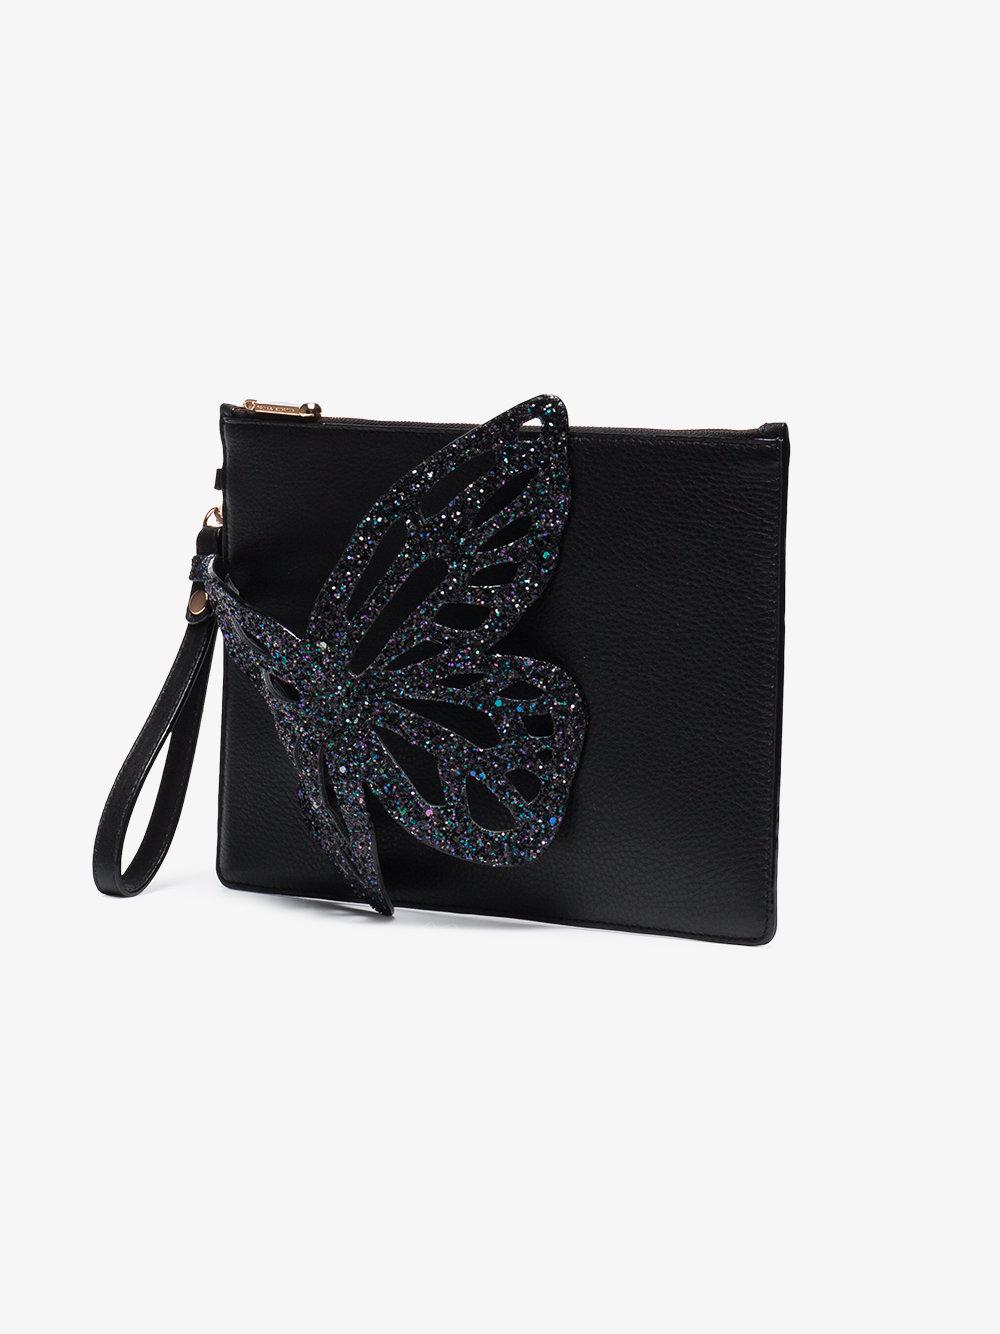 Sophia Webster Flossy Glitter Butterfly Clutch in Black | Lyst